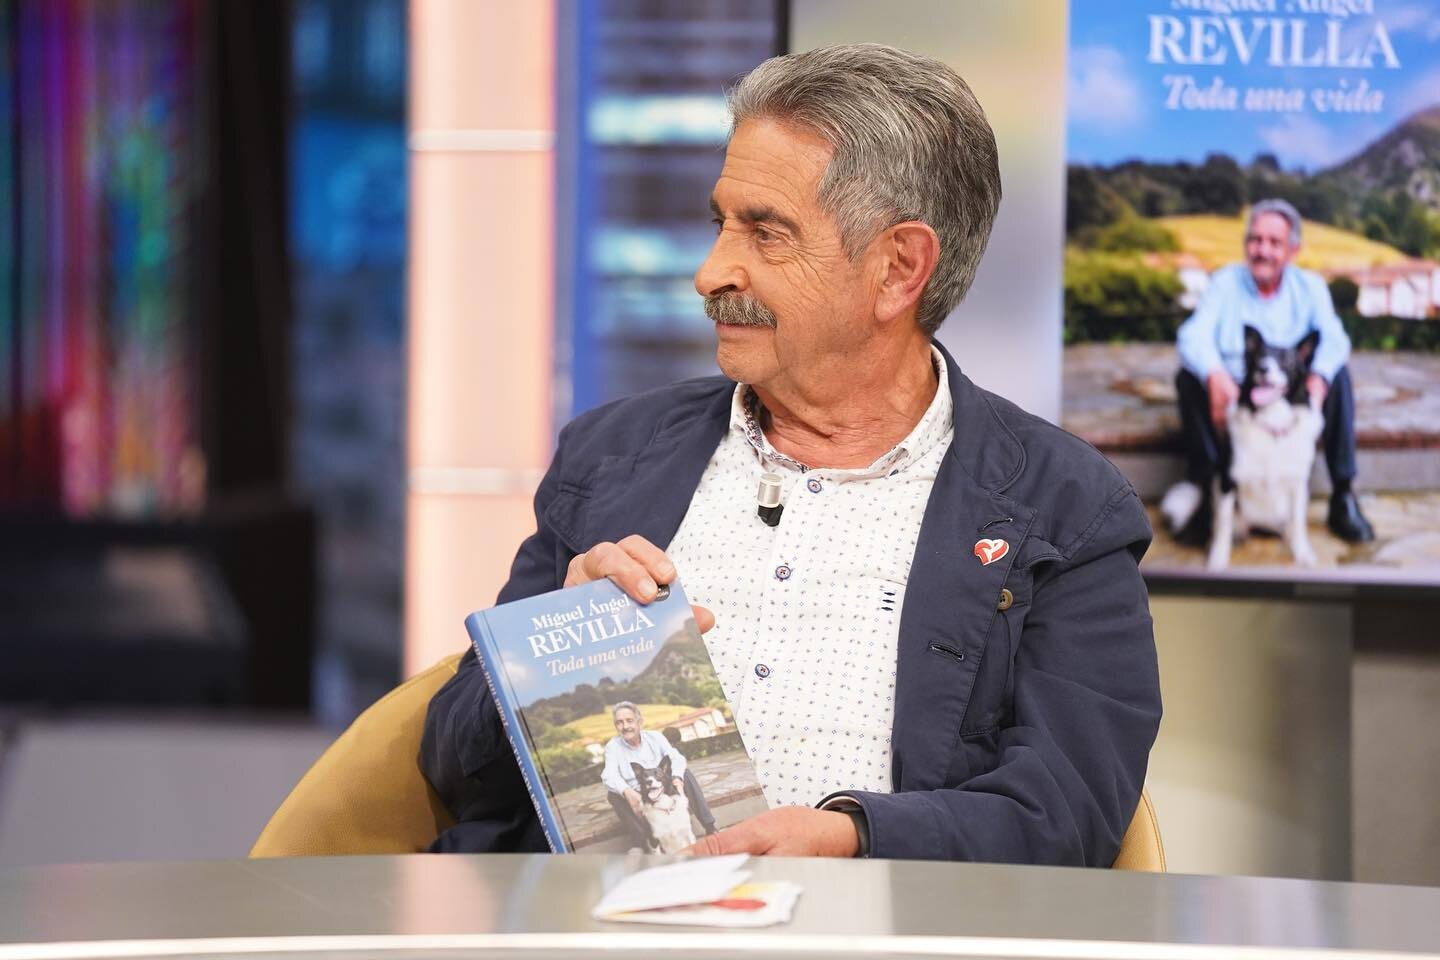 Miguel Ángel Revilla presenta su nuevo libro / Foto: Antena 3